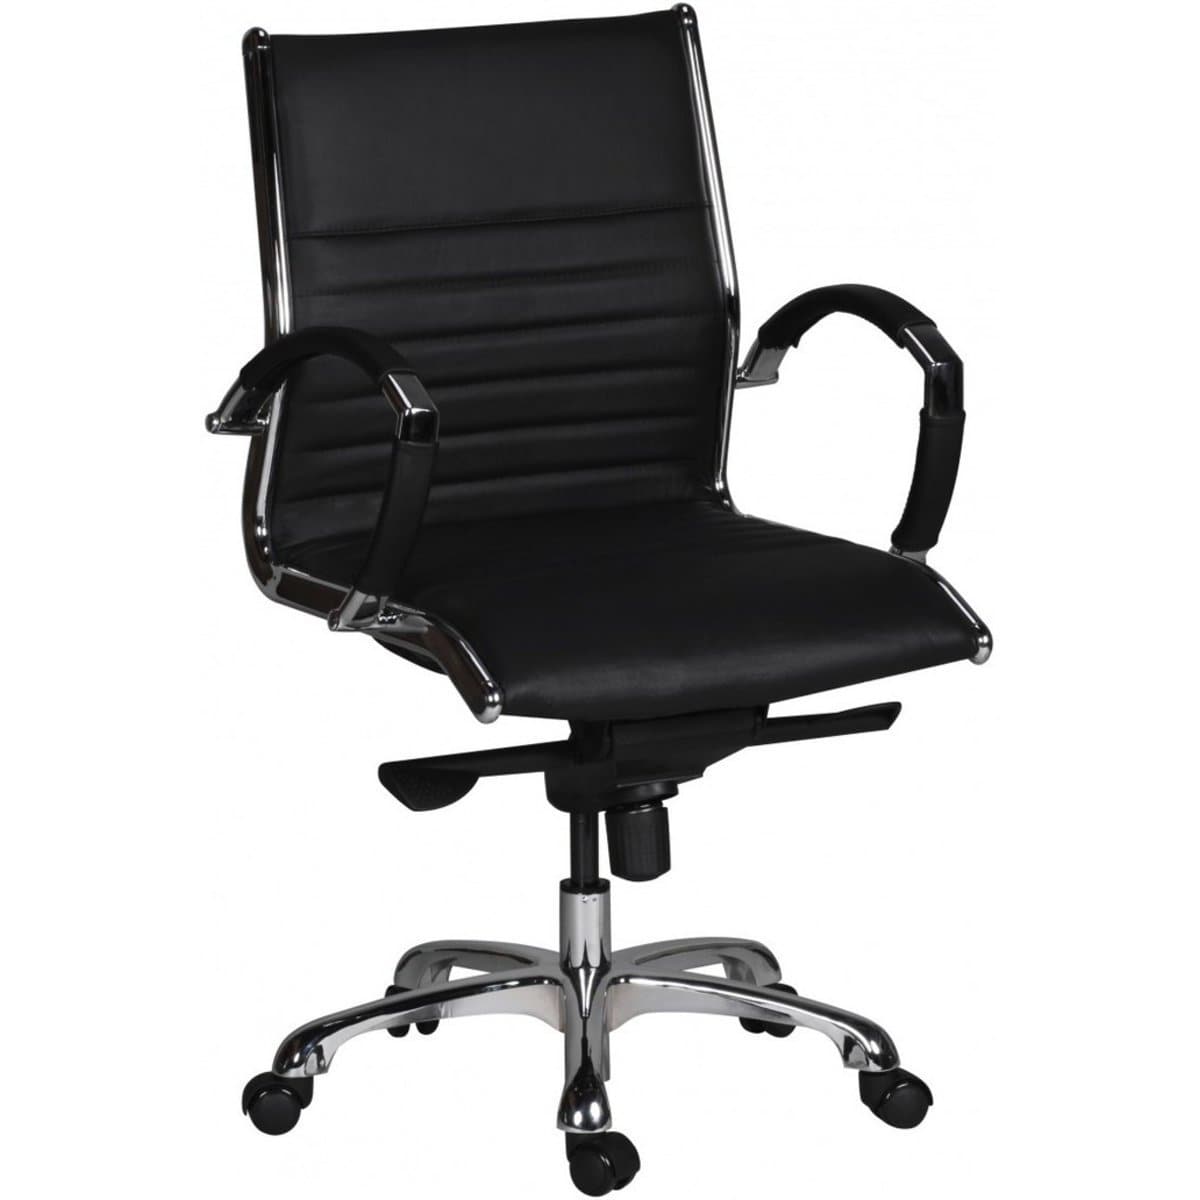 Chaise de bureau Nancy's Bronx en cuir - Chaise de bureau ergonomique - Chaises de bureau pour adultes - Aluminium - Cuir